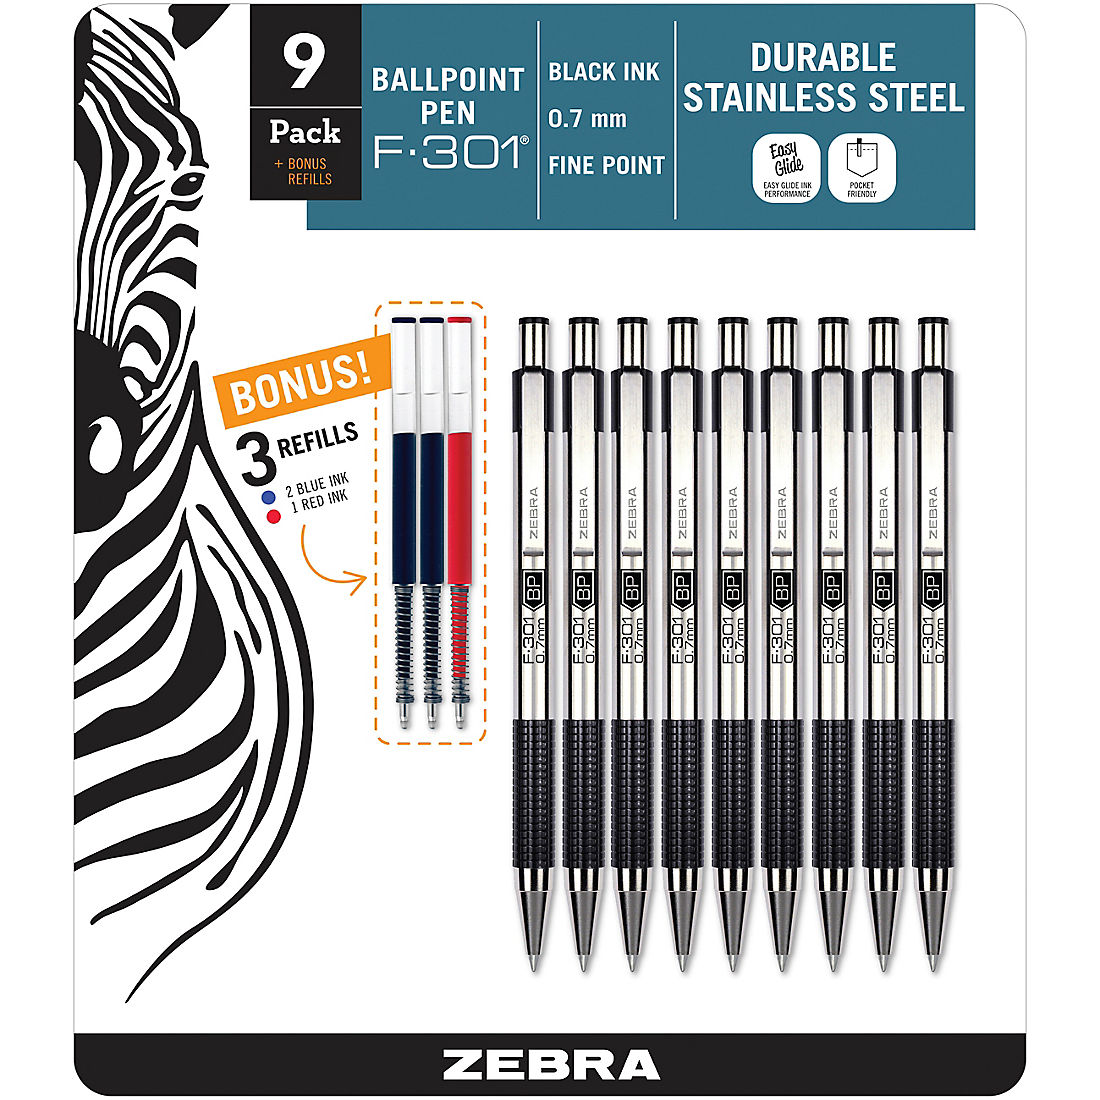 Zebra F-301 0.7mm retractable ball pen x 10 pcs blue ink